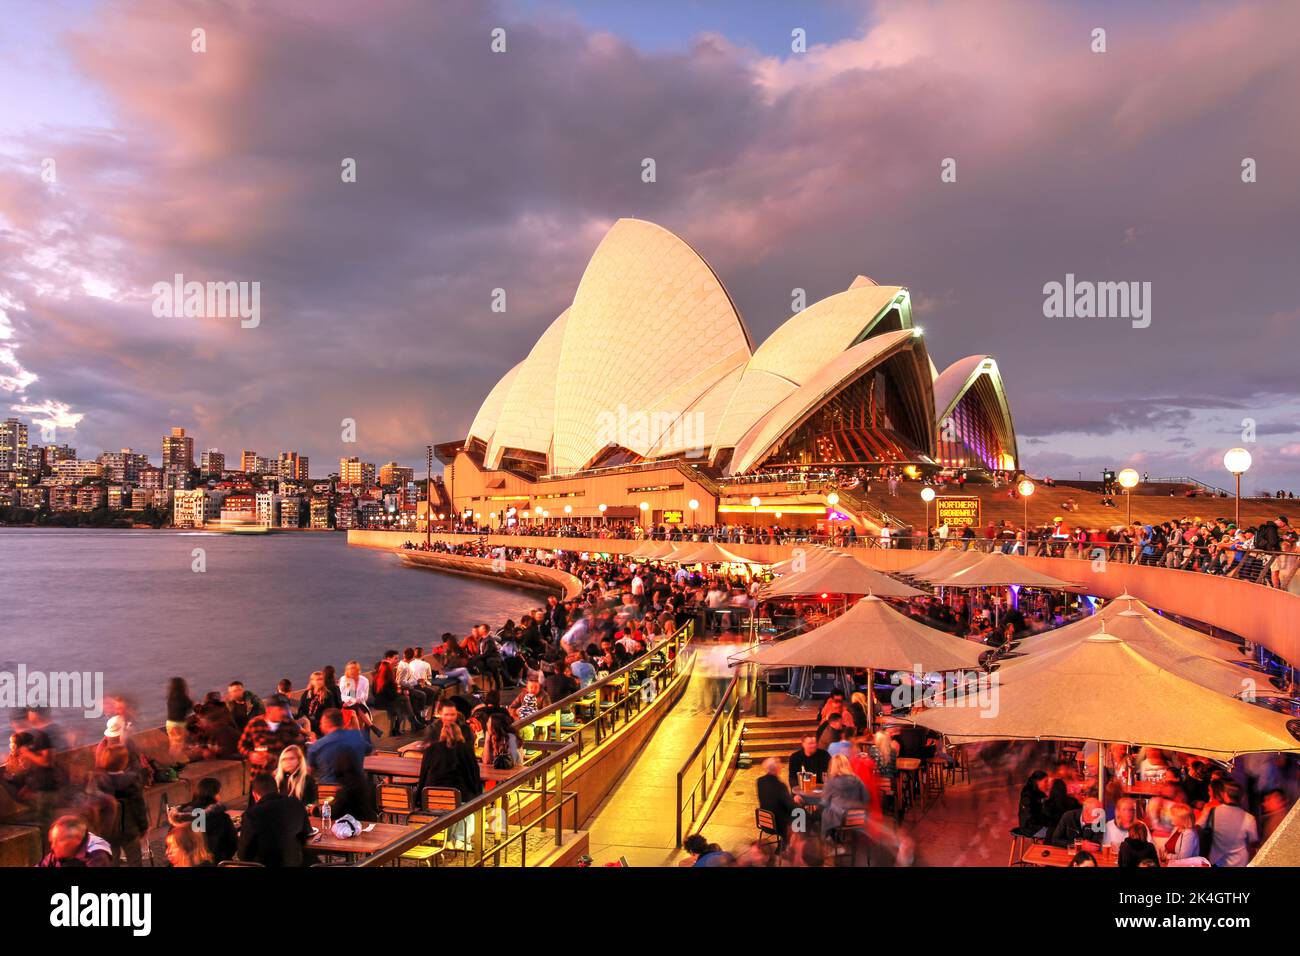 Während des lebhaften Festivals können Sie den herrlichen Sonnenuntergang über dem Opernhaus von Sydney genießen, während viele Menschen auf die Beleuchtung warten. Stockfoto